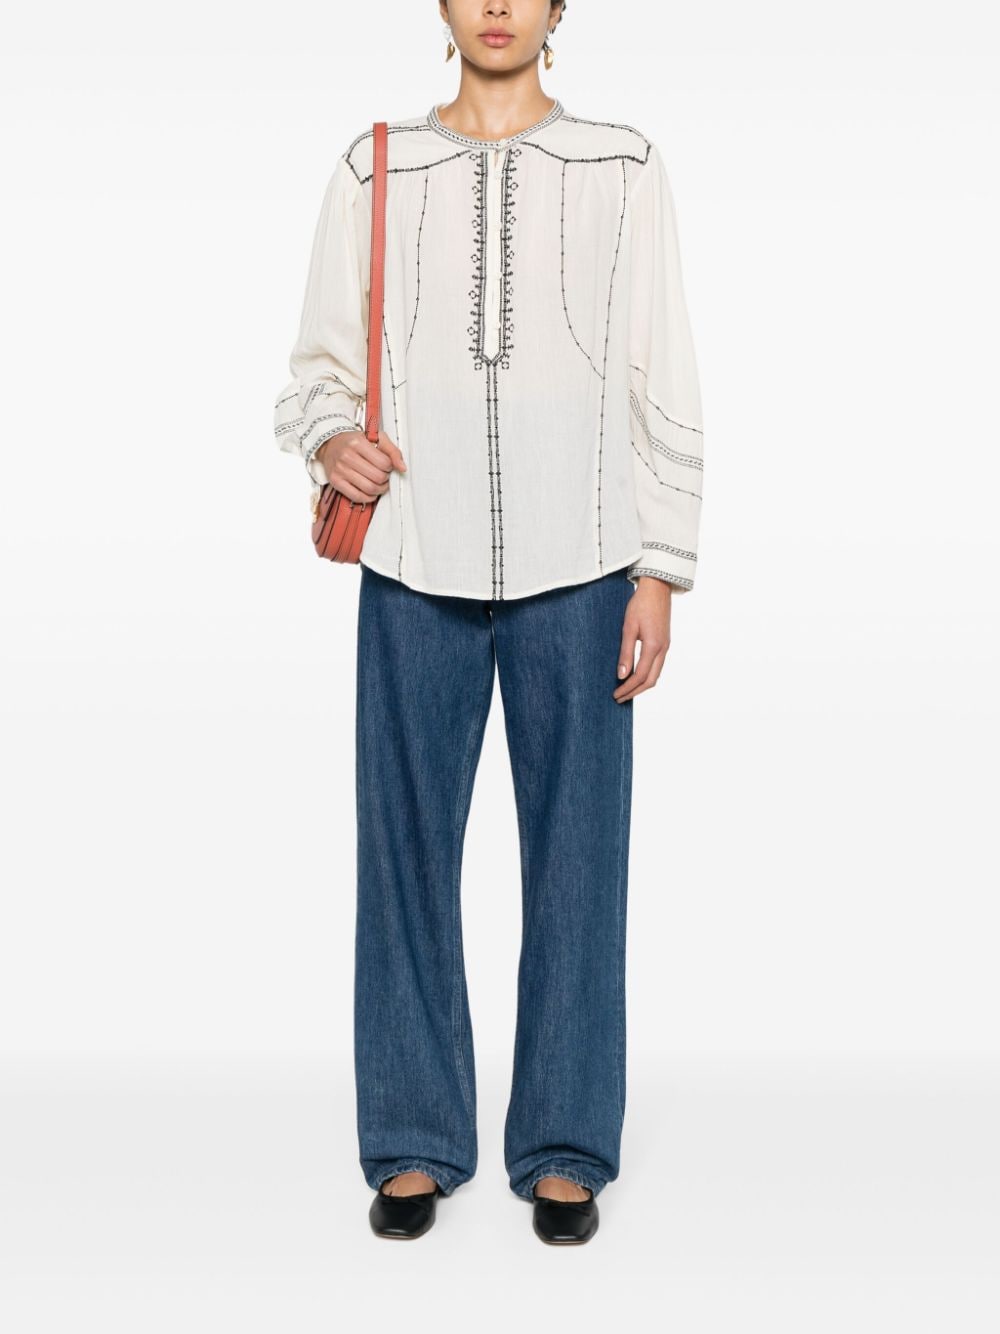 MARANT ÉTOILE Pelson embroidered cotton blouse - Beige